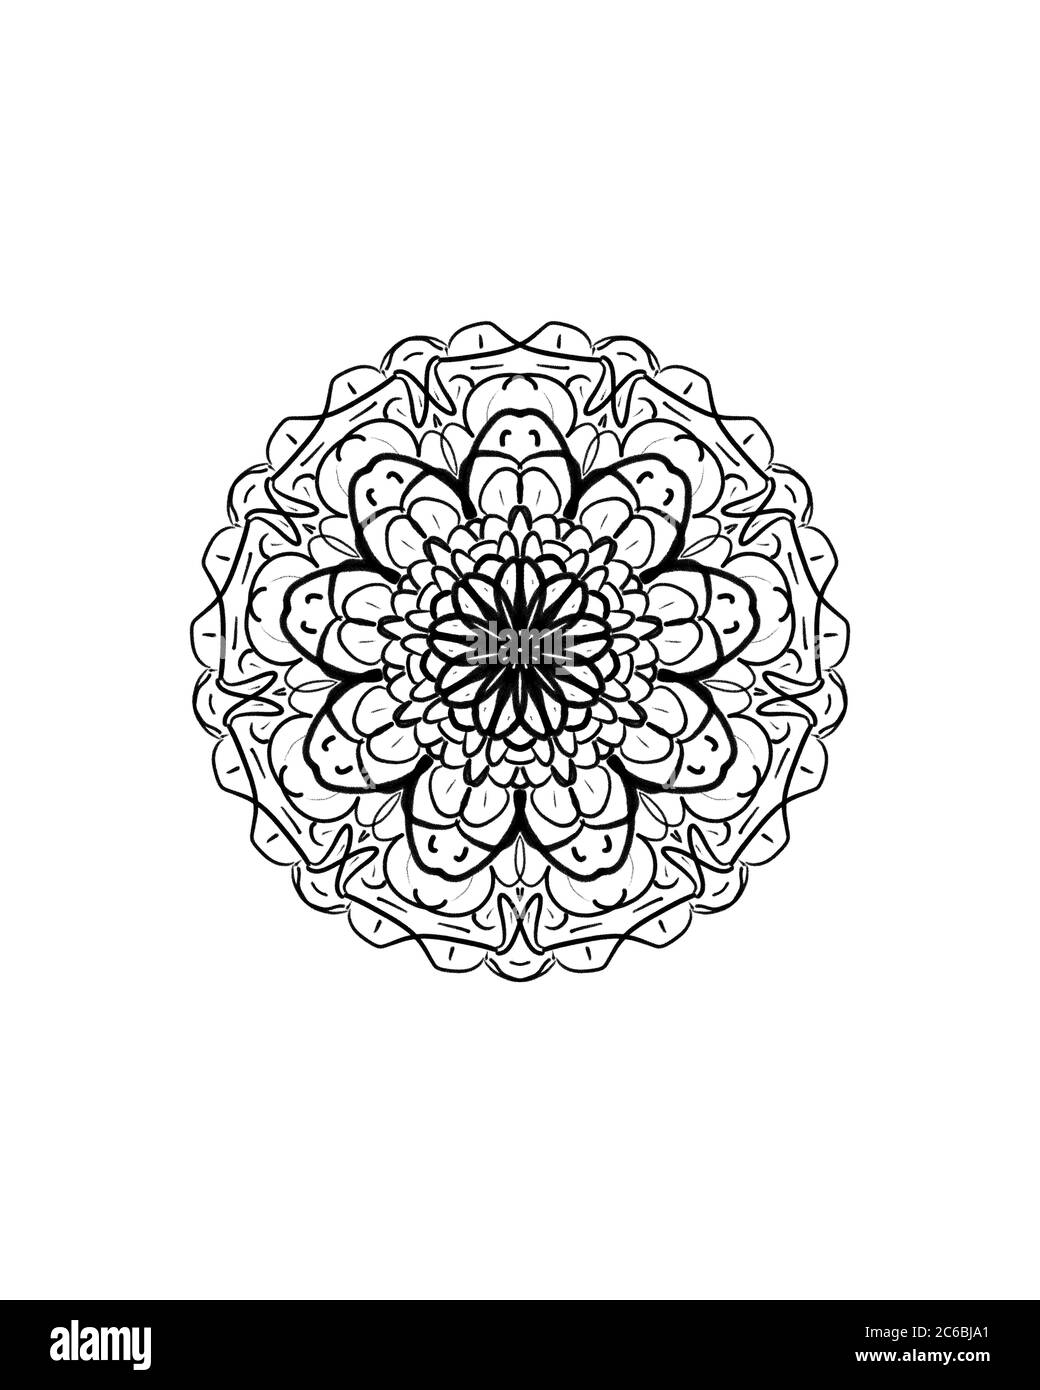 Une simple illustration géométrique noire de mandala sur fond blanc Banque D'Images